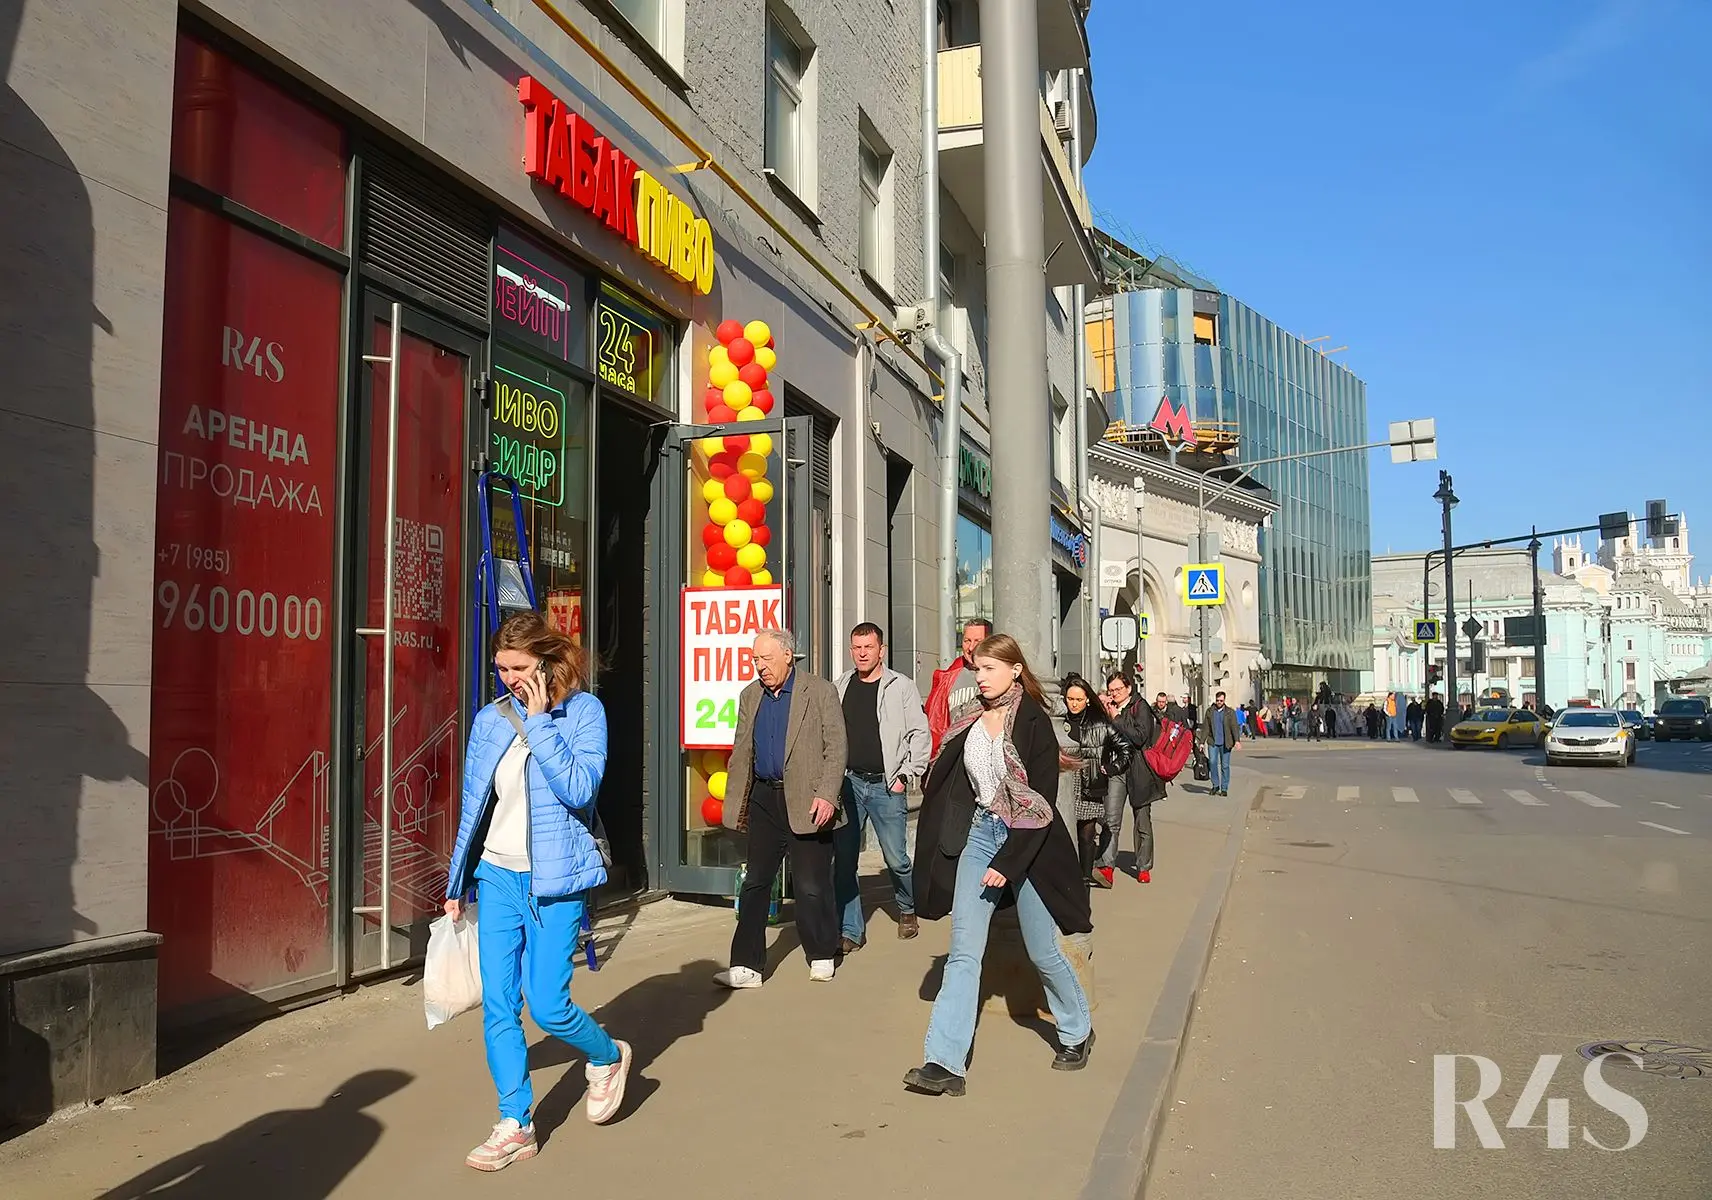 Аренда торговых помещений площадью 19.8 - 196.6 м2 в Москве:  Грузинский Вал, 28/45 R4S | Realty4Sale